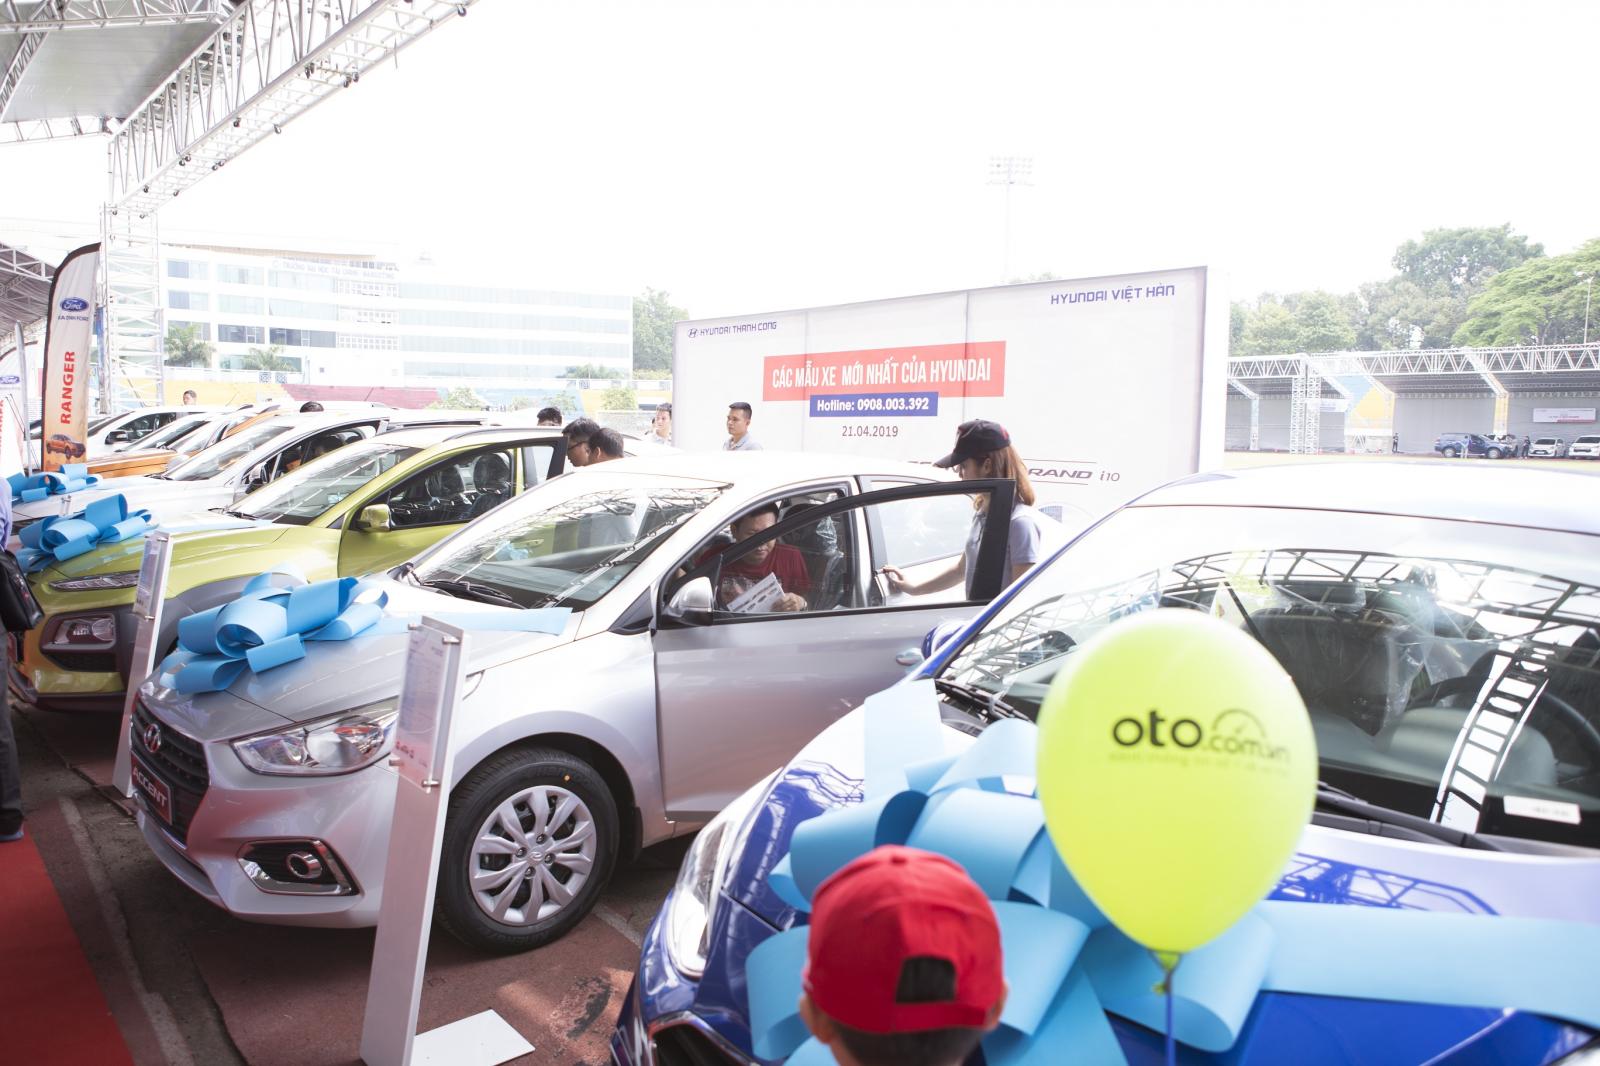 Rất nhiều các mẫu xe Hyundai cũ - mới được trưng bày và cho phép lái thử tại Hội chợ Oto.com.vn.